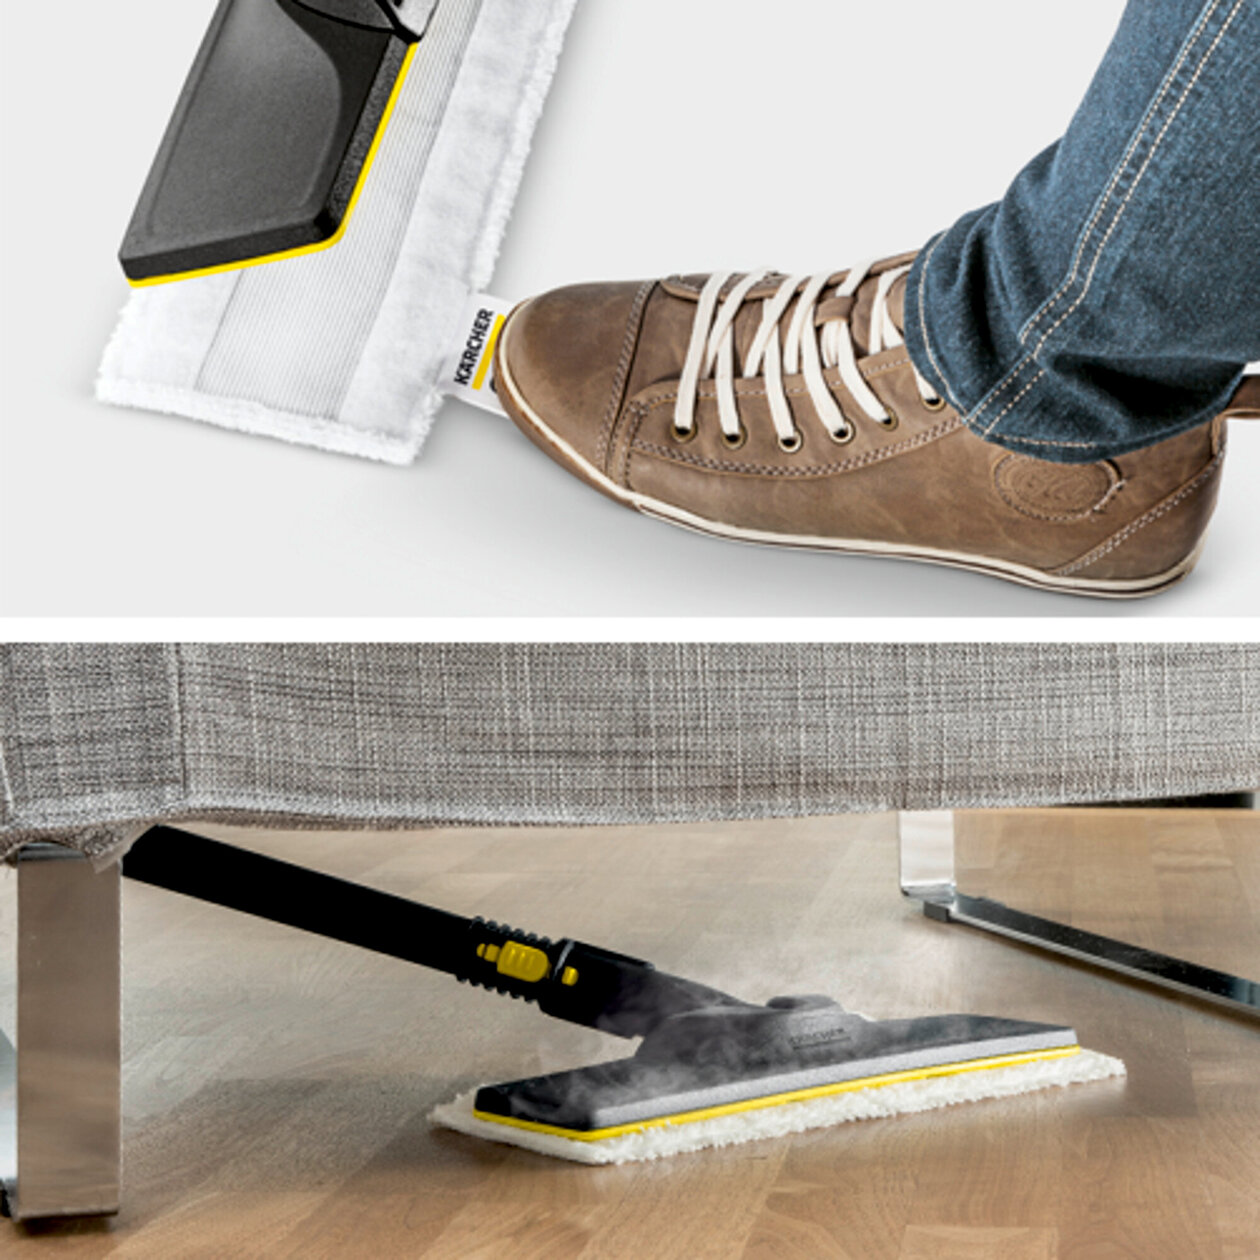  SC 5 EasyFix Iron (yellow) *EU: Súprava na čistenie podlahy EasyFix s flexibilným kĺbom na podlahovej hubici a pohodlným suchým zipsom na upevnenie utierky na podlahu